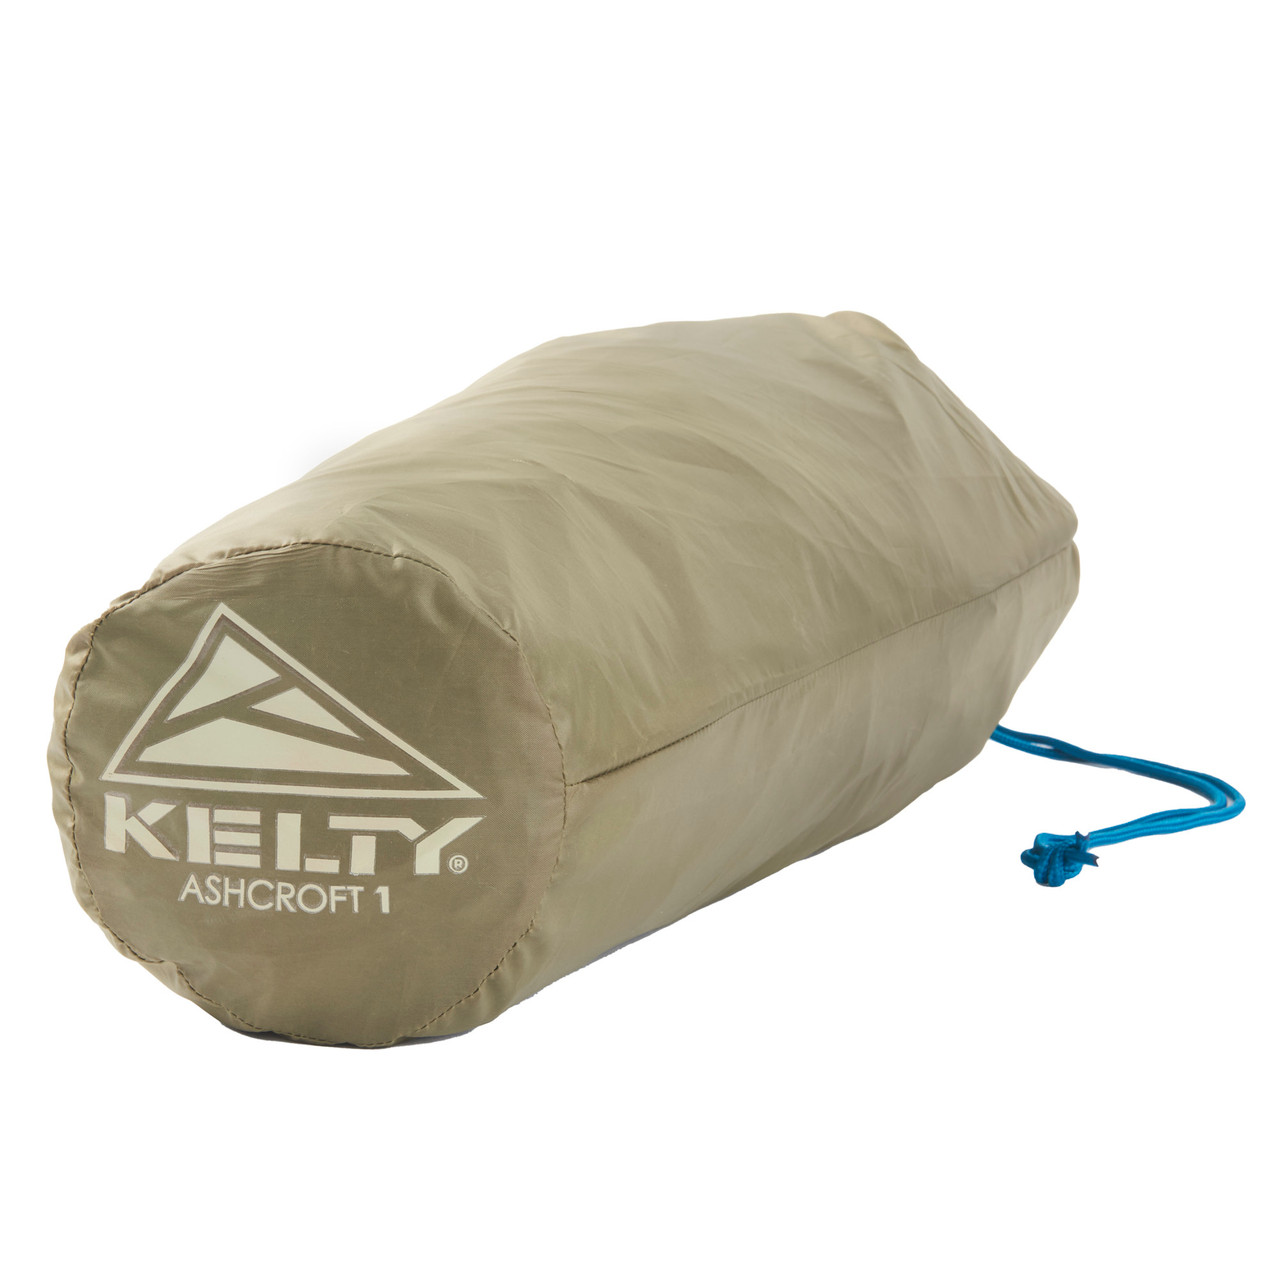 Kelty Ashcroft - Tienda de campaña para 1, 2 o 3 personas con cobertura  completa, postes de aluminio ligeros, refugio para festivales de mochileros